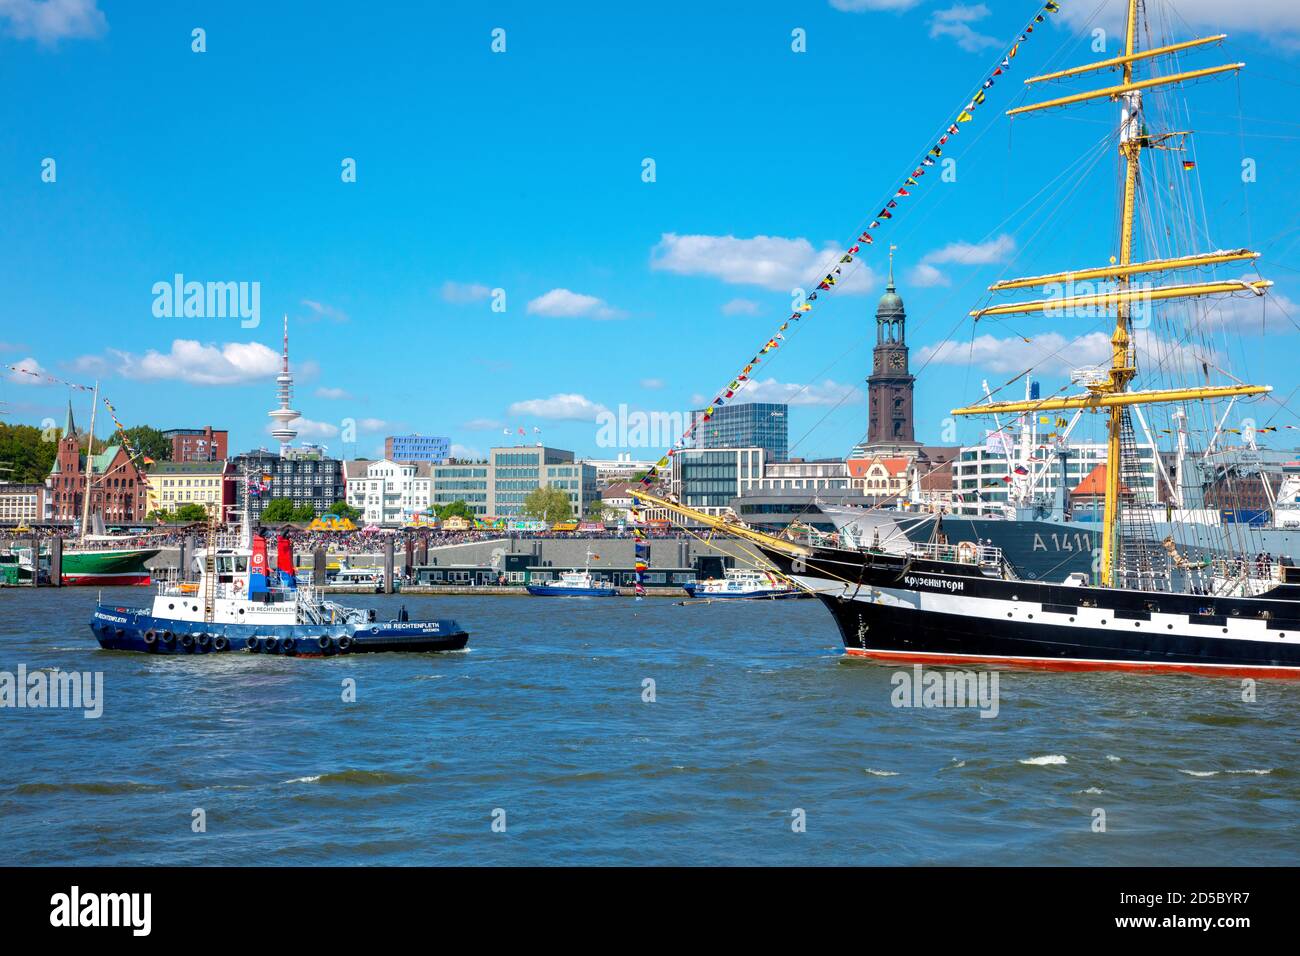 Deutschland, Hansestadt Hamburg, Hamburger Hafengeburtstag 2019, Parade auf der Elbe. Blick auf den Michel. Foto Stock